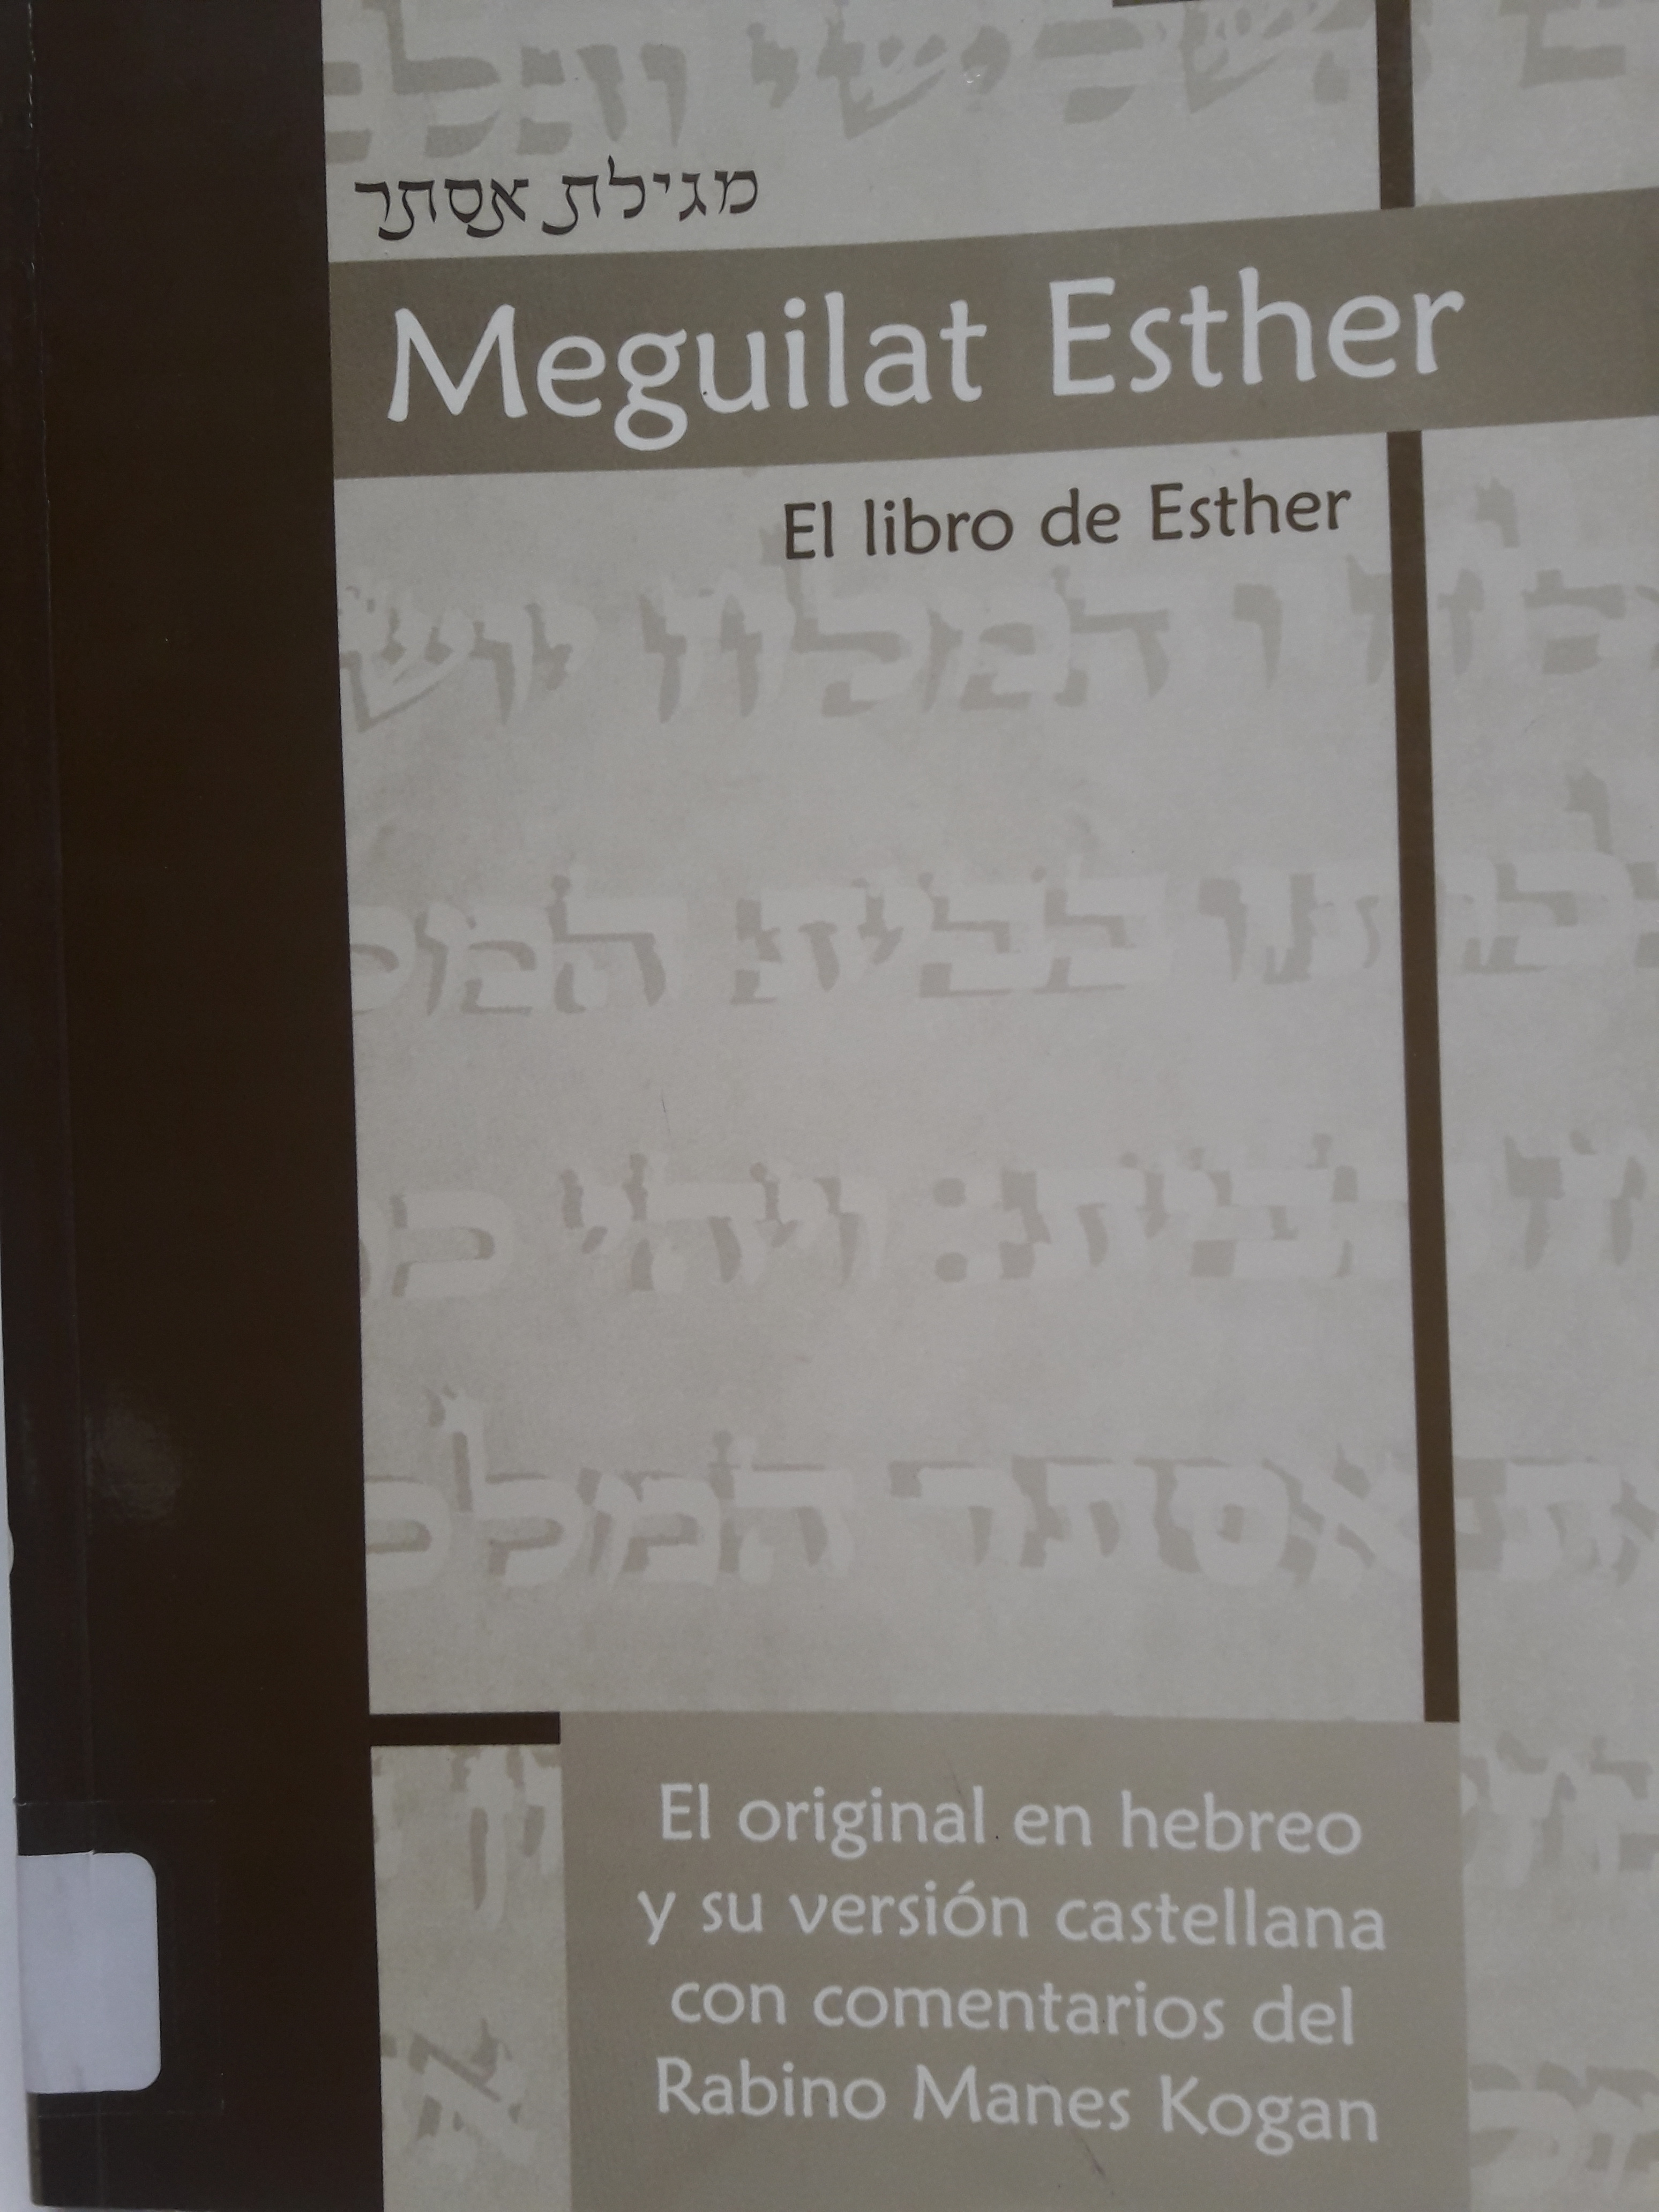 Meguilat Esther, el libro de Esther: el original en hebreo y su versión en castellano con comentarios del Rabino Manes Kogan